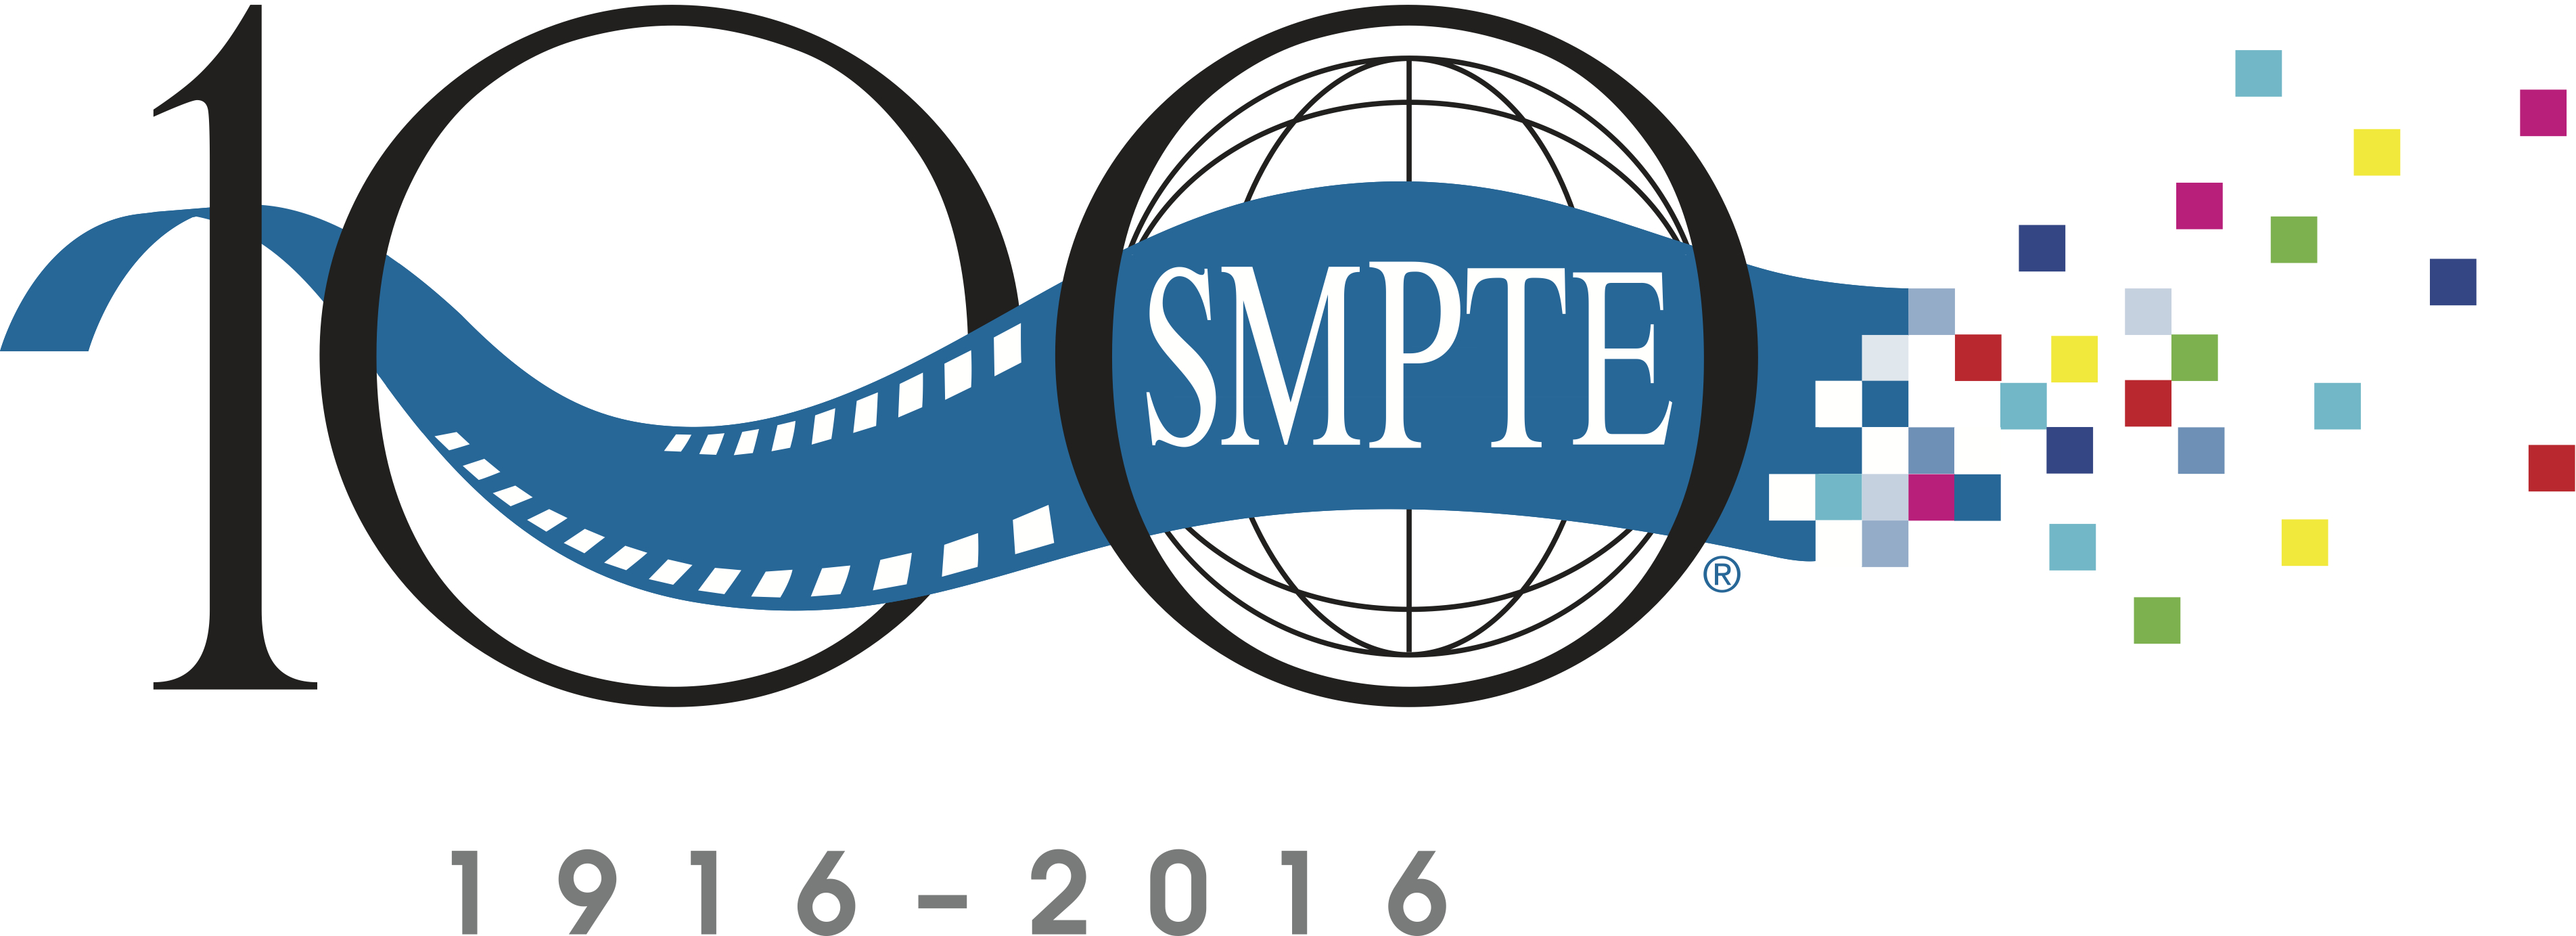 SMPTE Centennial Logo